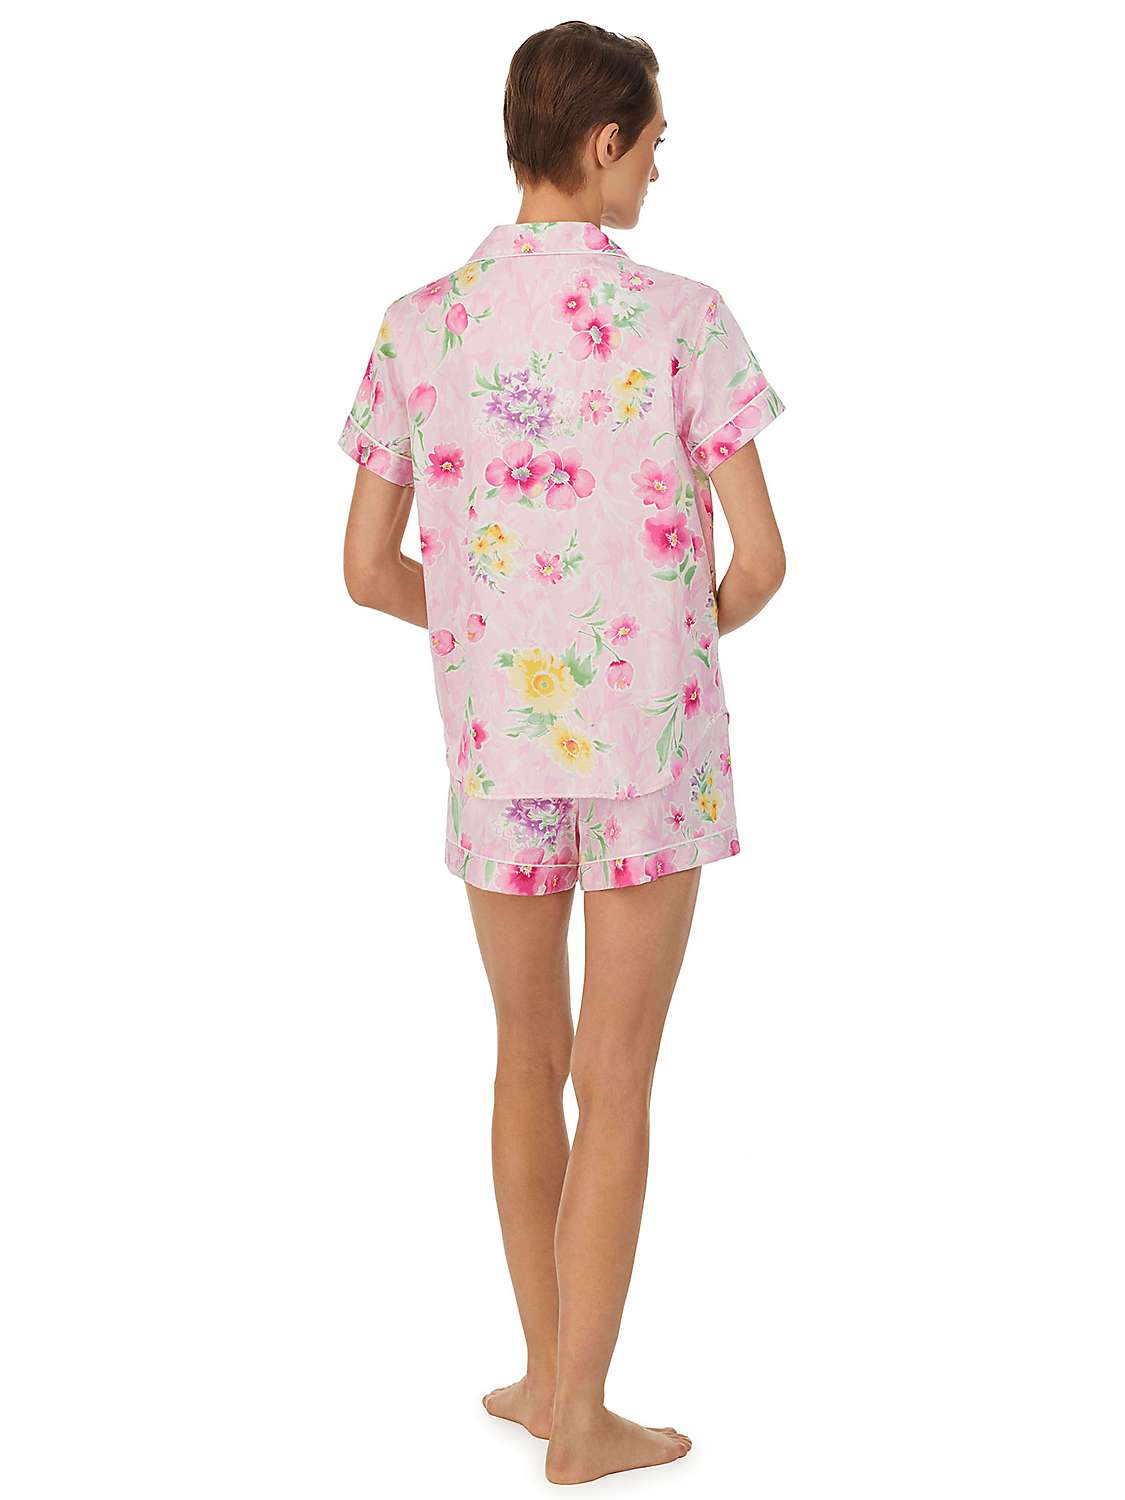 Buy Lauren Ralph Lauren Floral Shorts Pyjamas, Pink/Multi Online at johnlewis.com